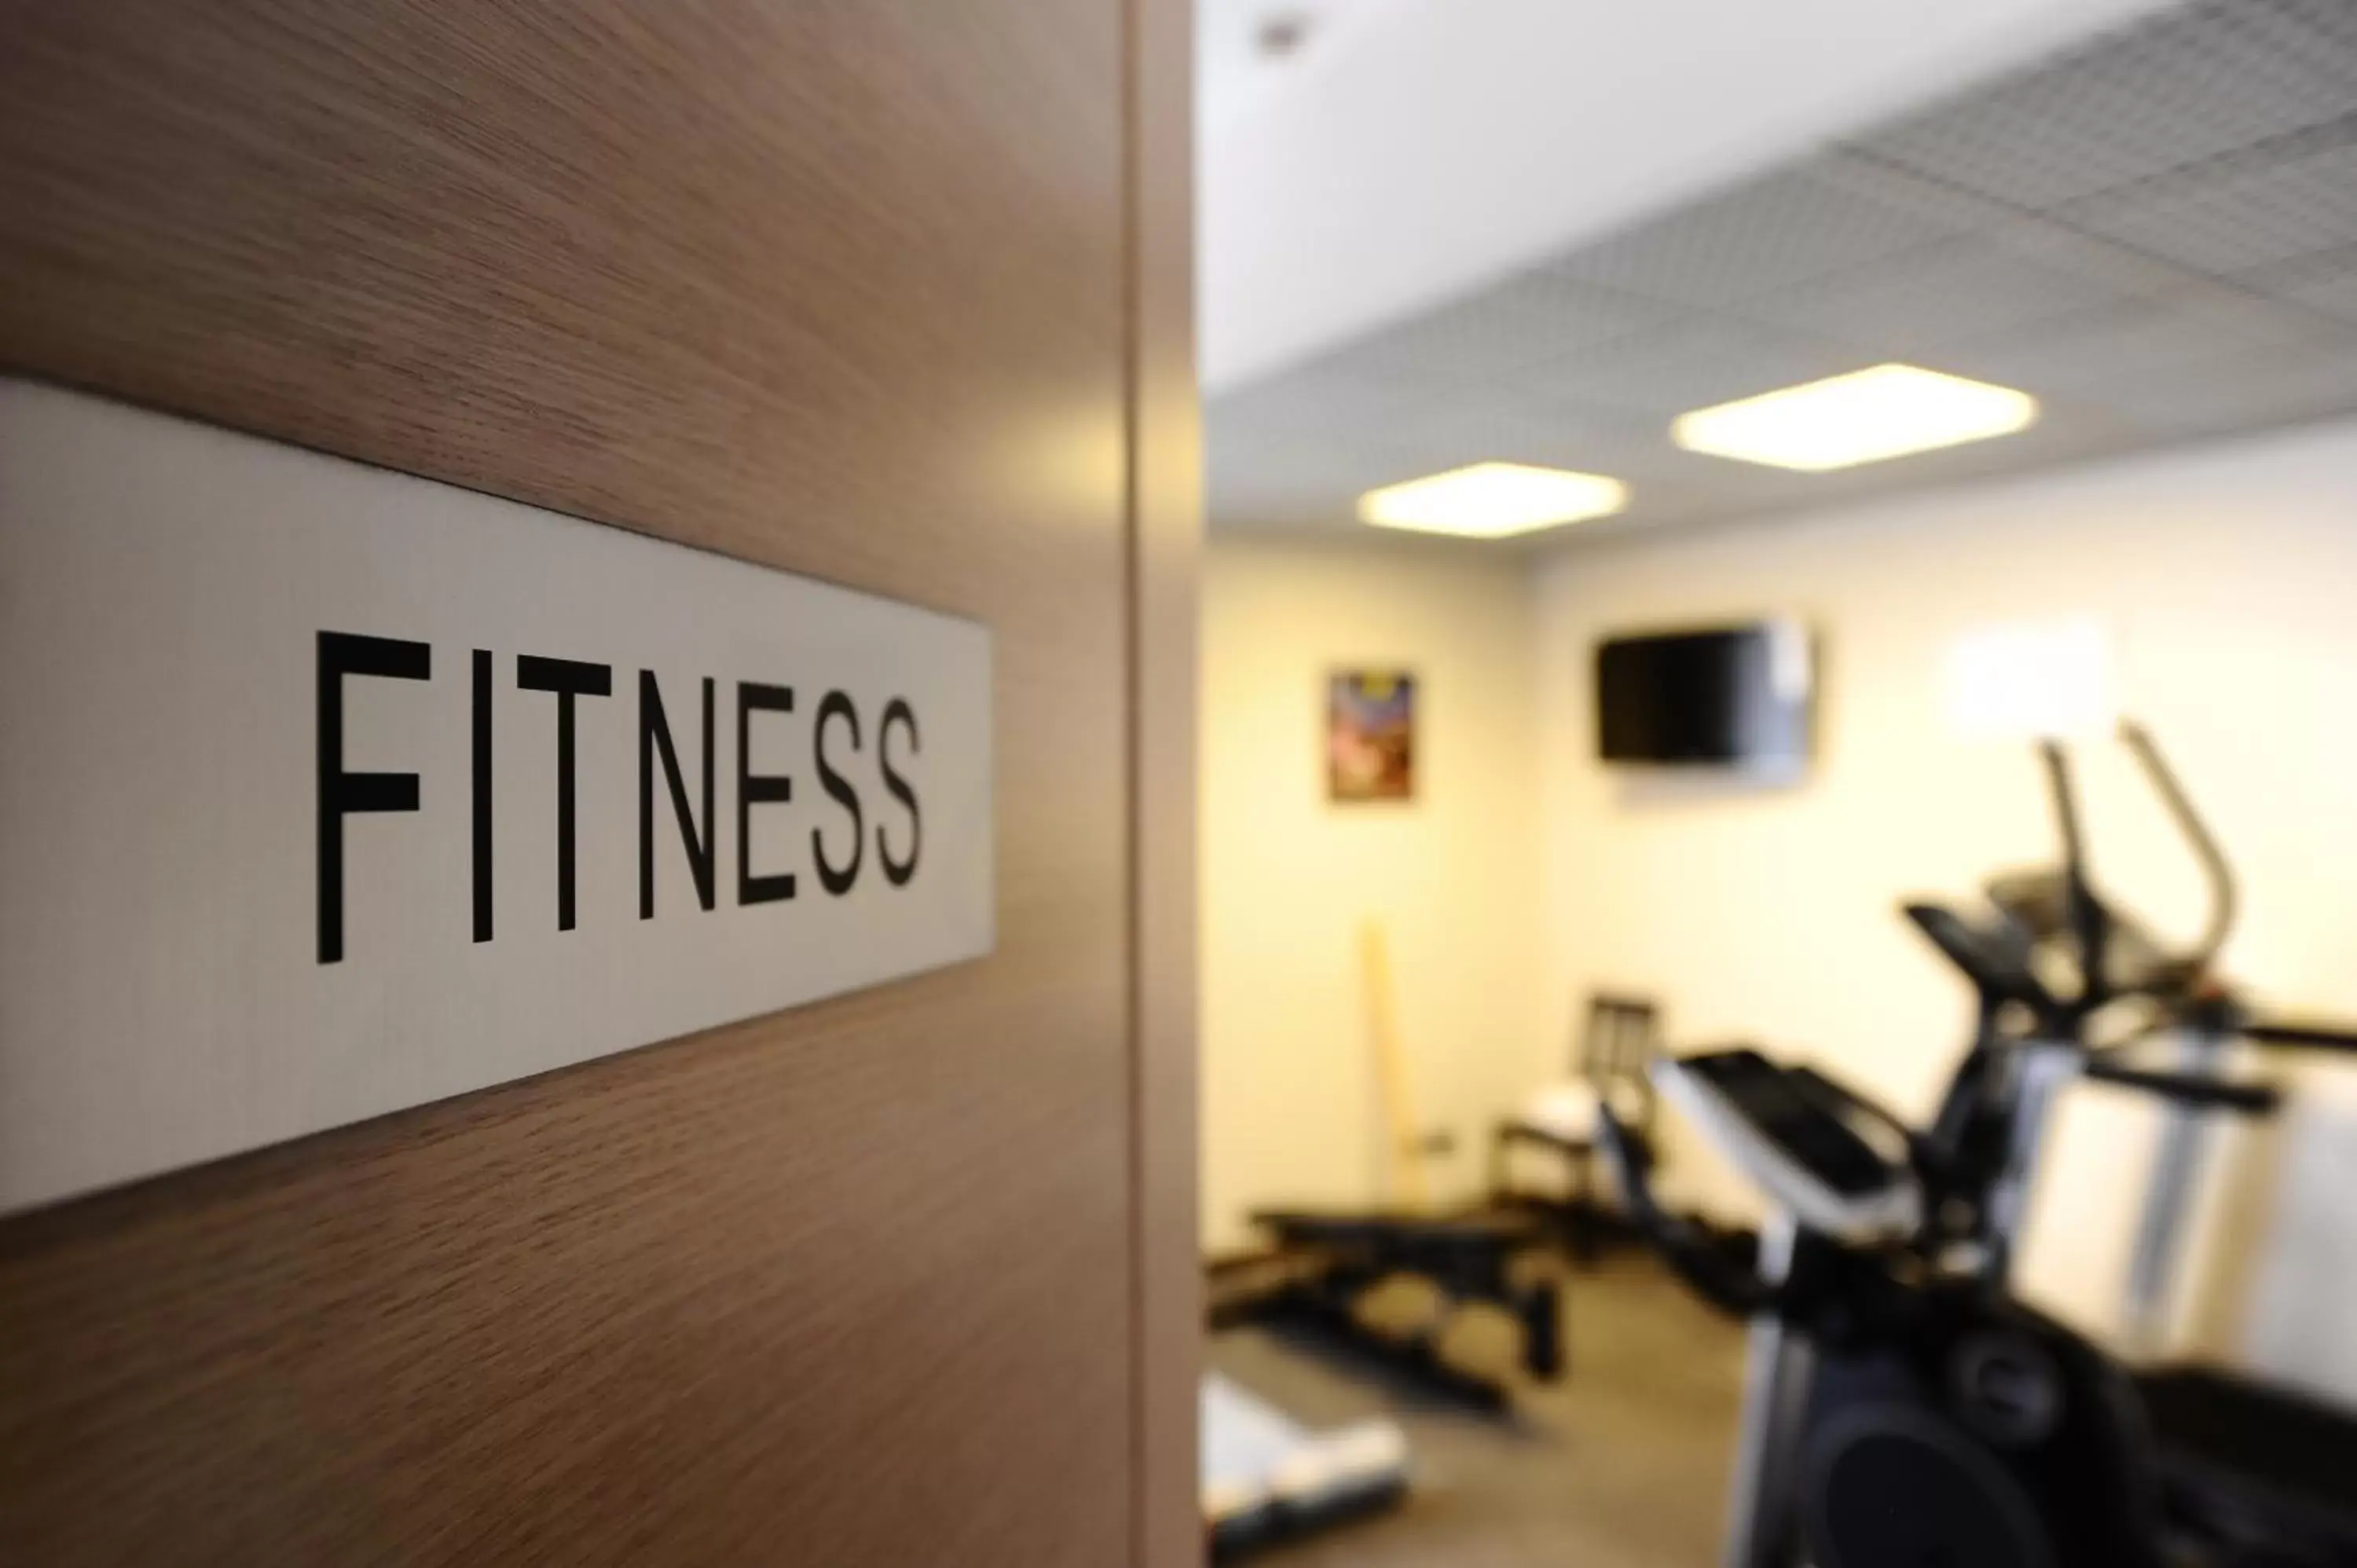 Fitness centre/facilities, Fitness Center/Facilities in Corvetto Residence Porto Di Mare